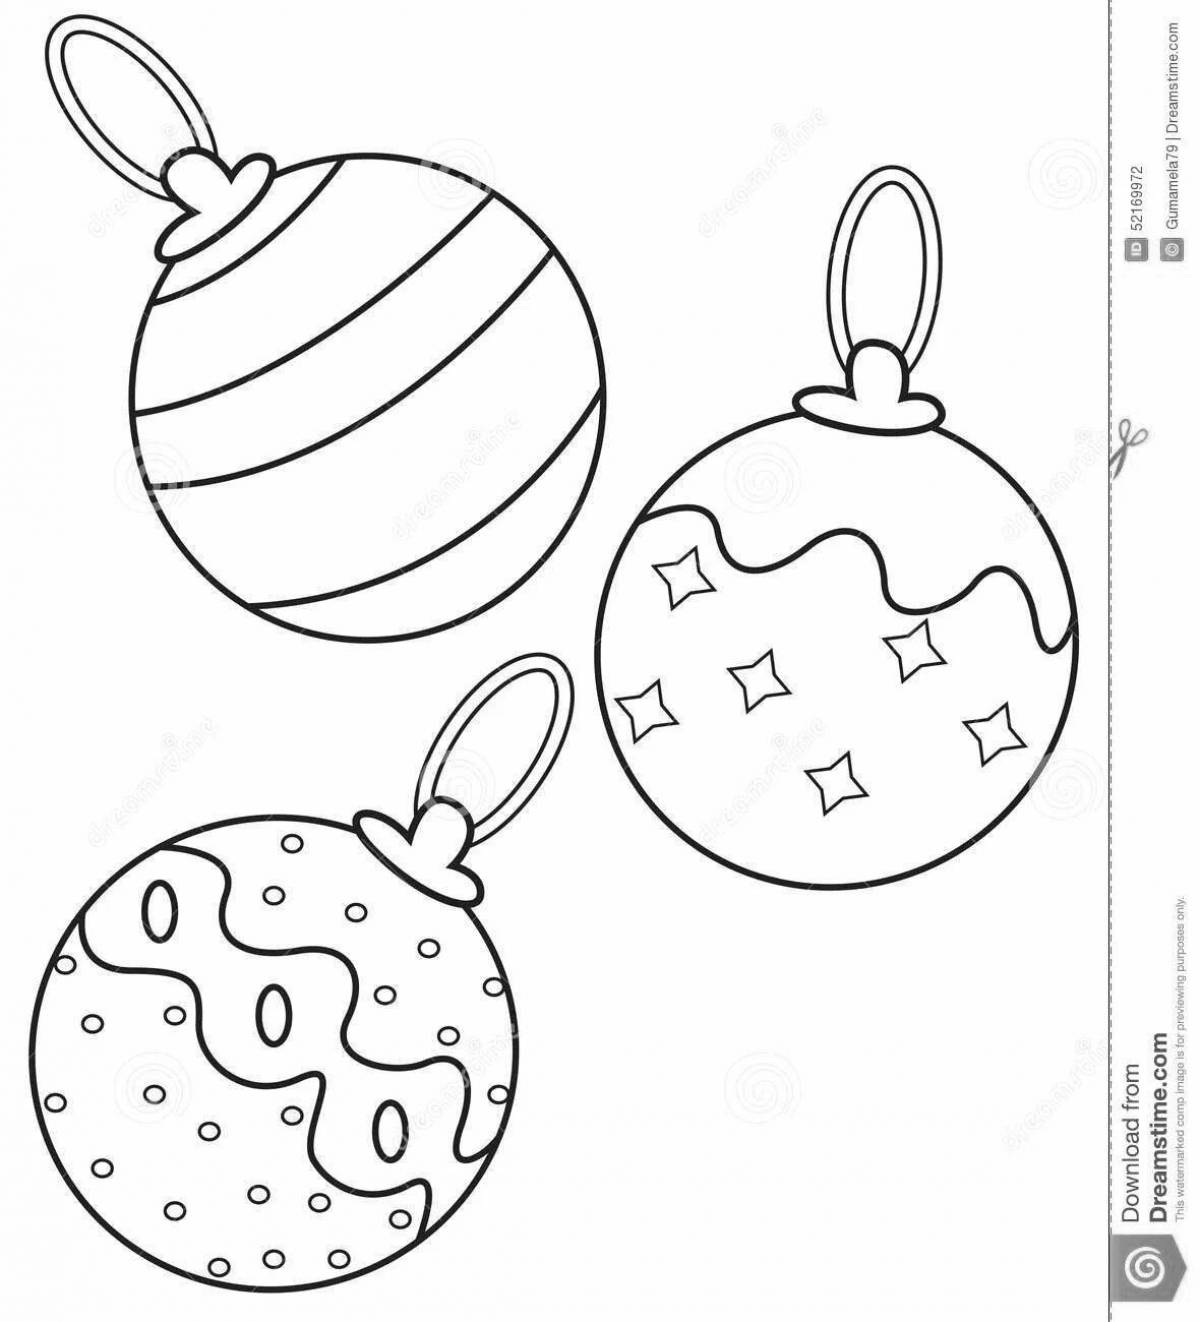 Adorable Christmas ball coloring page